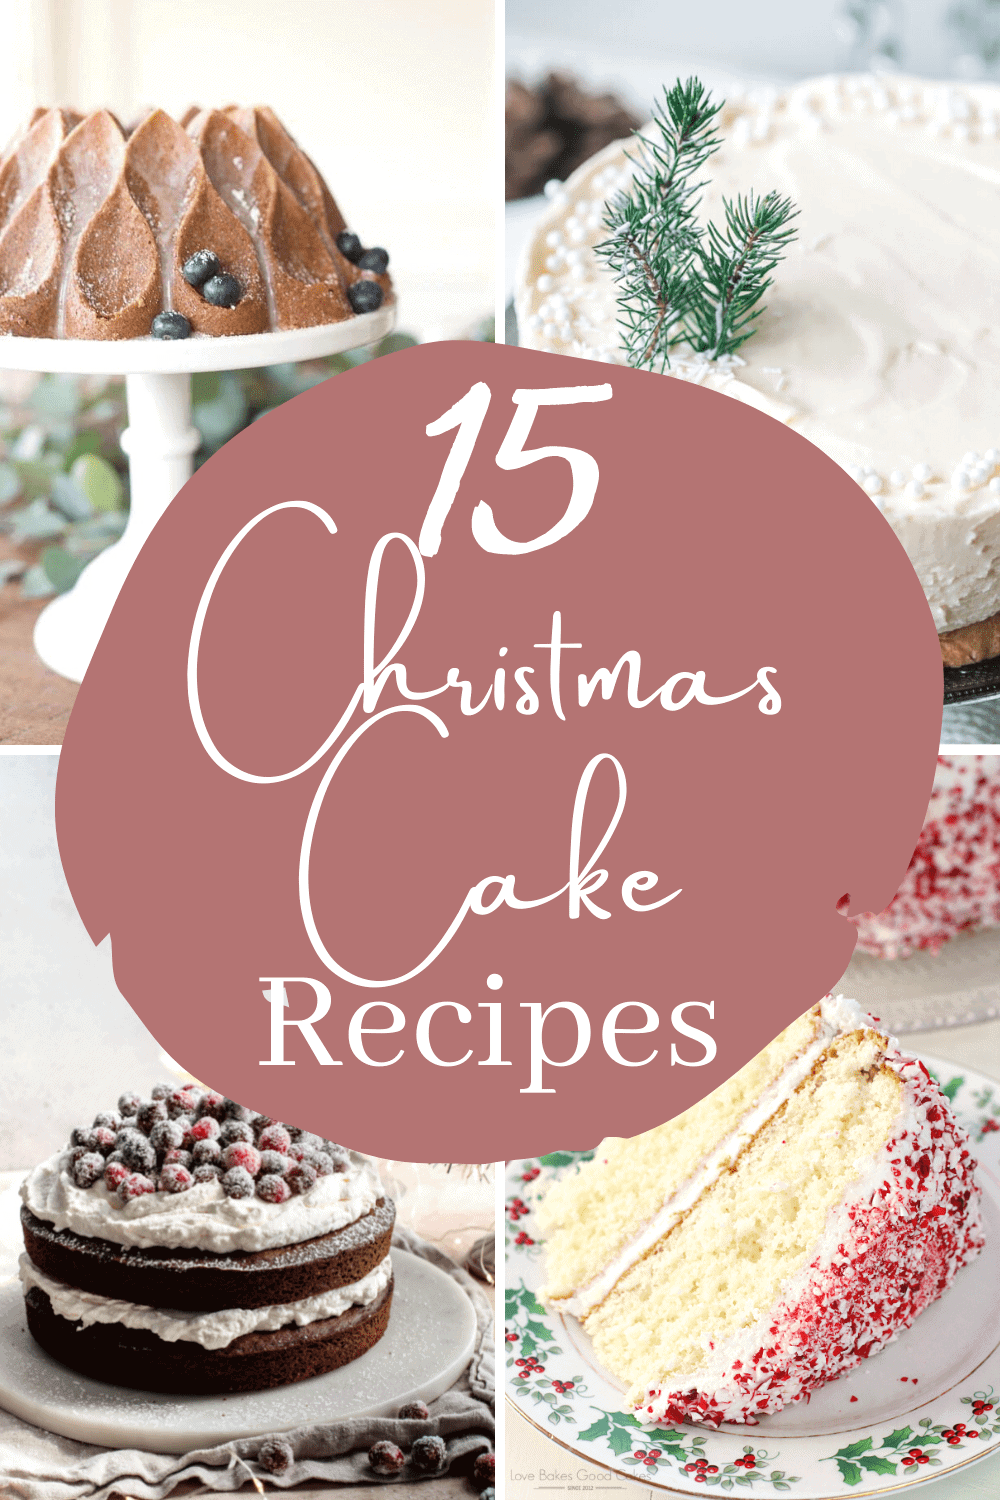 Christmas cake recipes